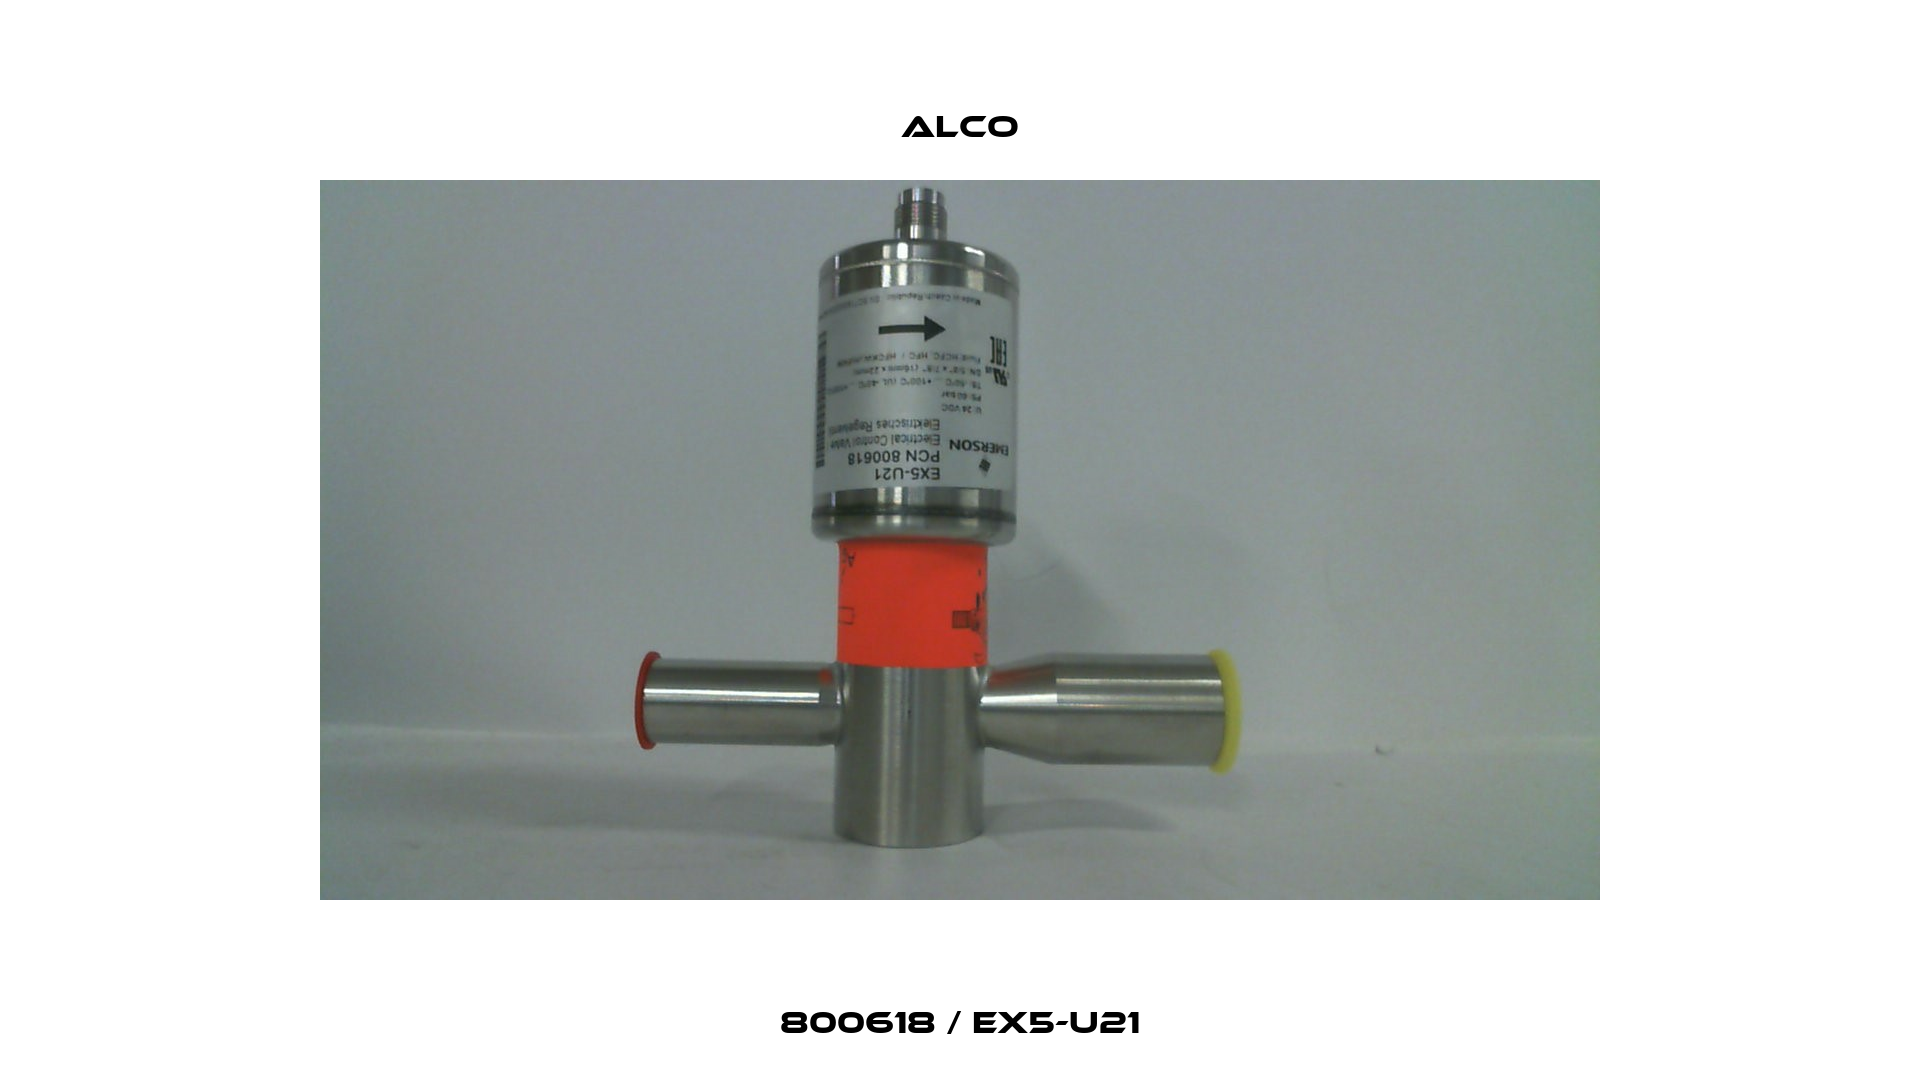 800618 / EX5-U21 Alco